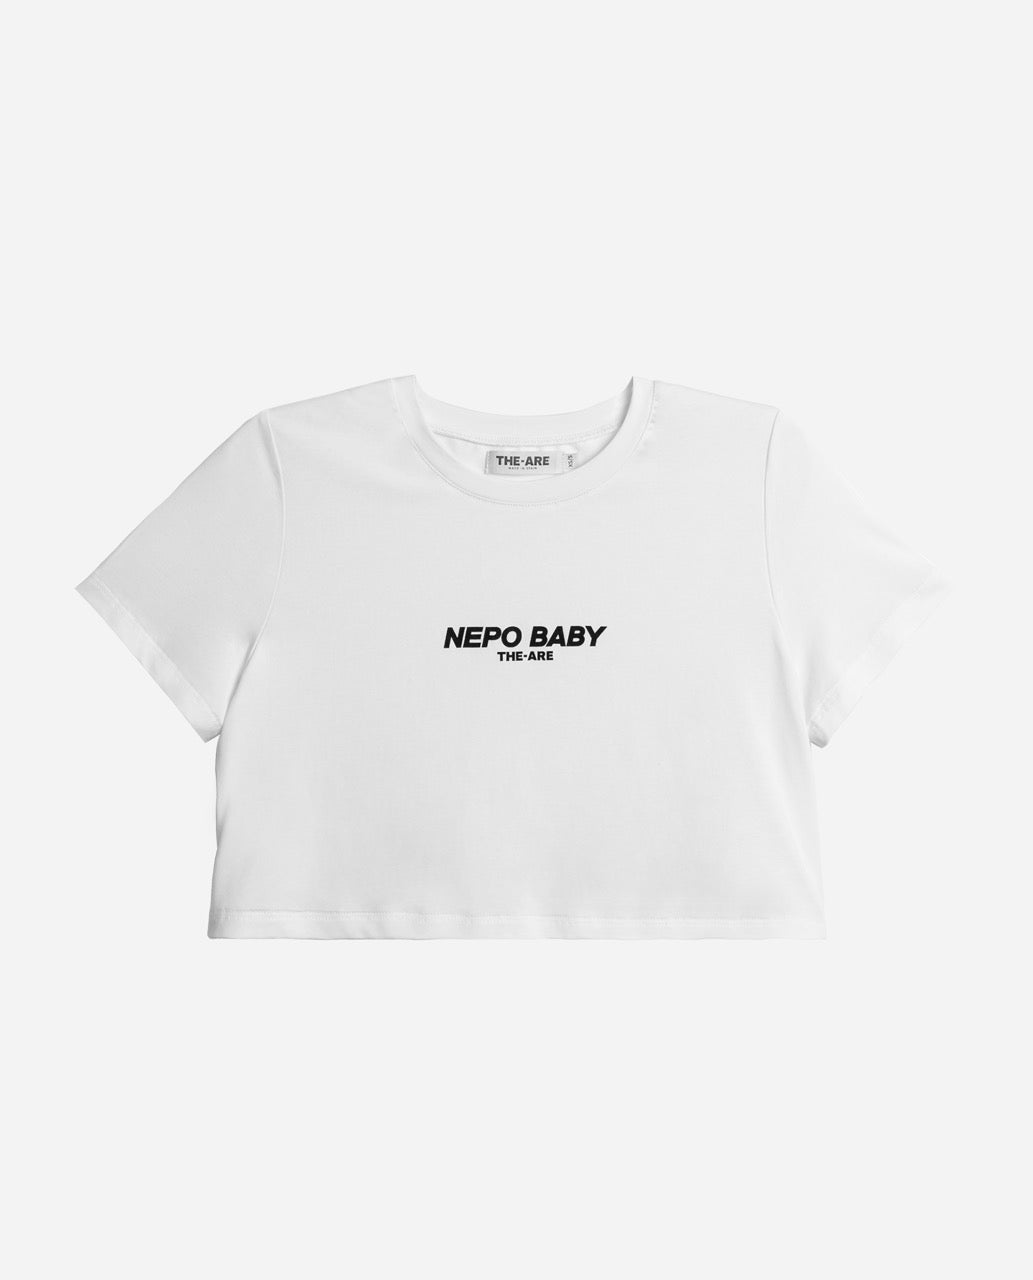 CAMISETA NEPO BABY | Camiseta Blanca de Manga Corta para Mujer Nepo Baby | THE-ARE